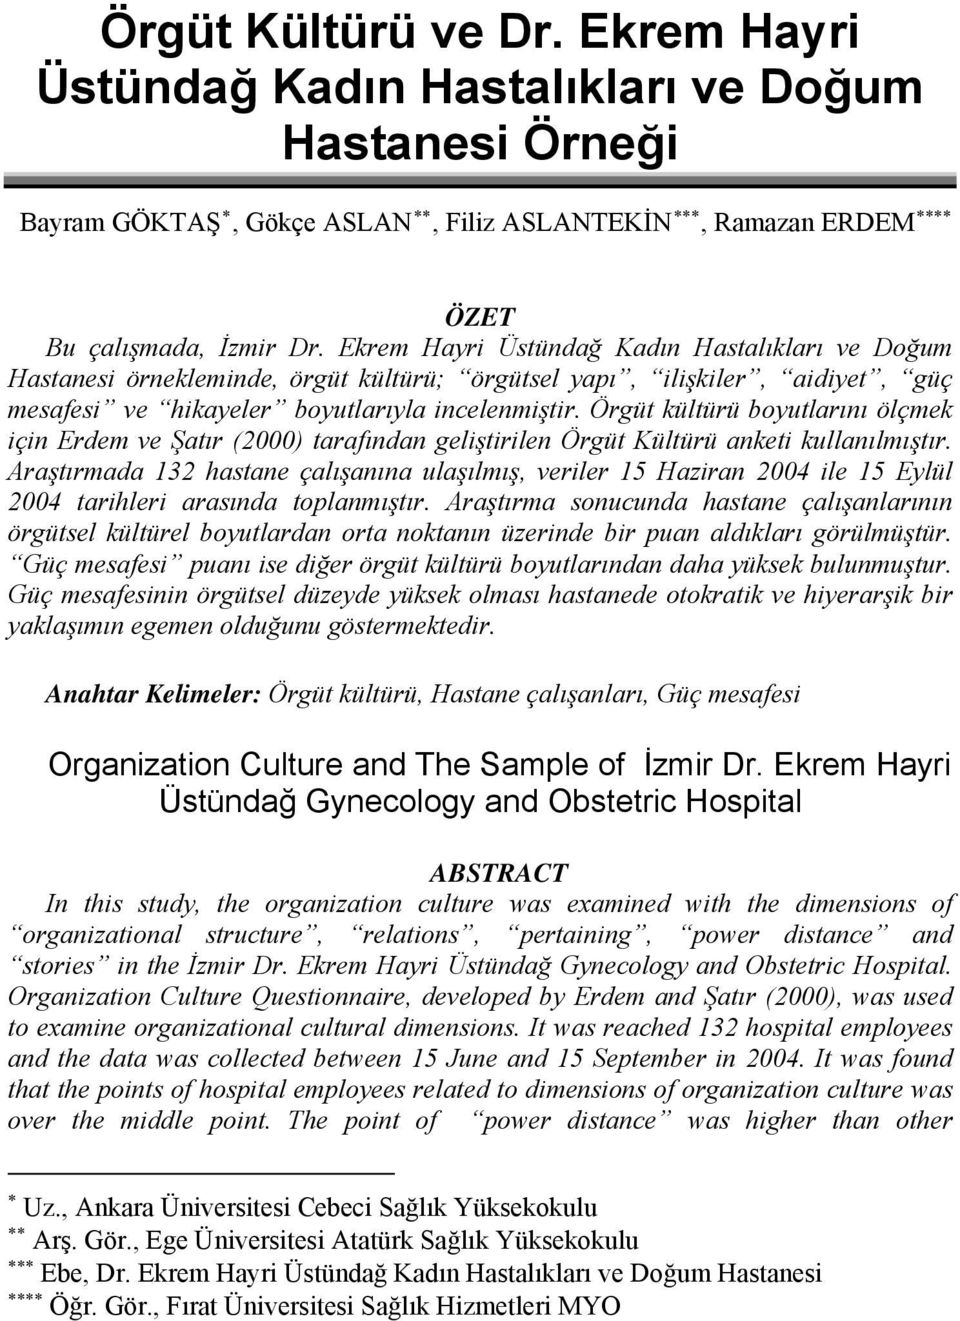 Örgüt kültürü boyutlarını ölçmek için Erdem ve Şatır (2000) tarafından geliştirilen Örgüt Kültürü anketi kullanılmıştır.